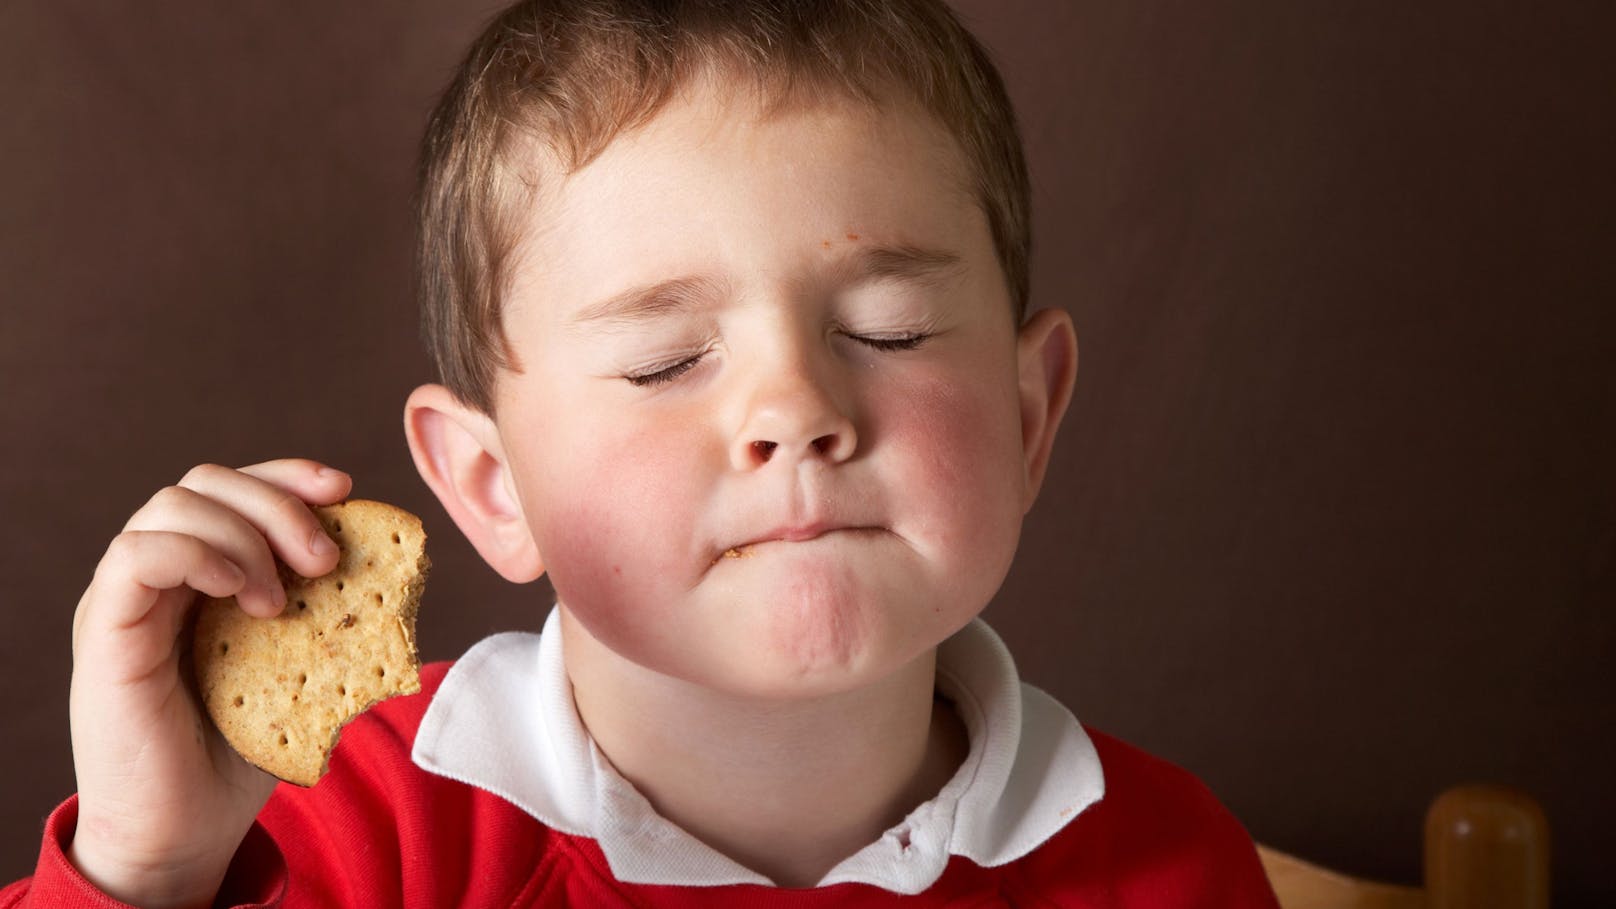 Kekse für Kinder im Test als Zuckerfallen entlarvt